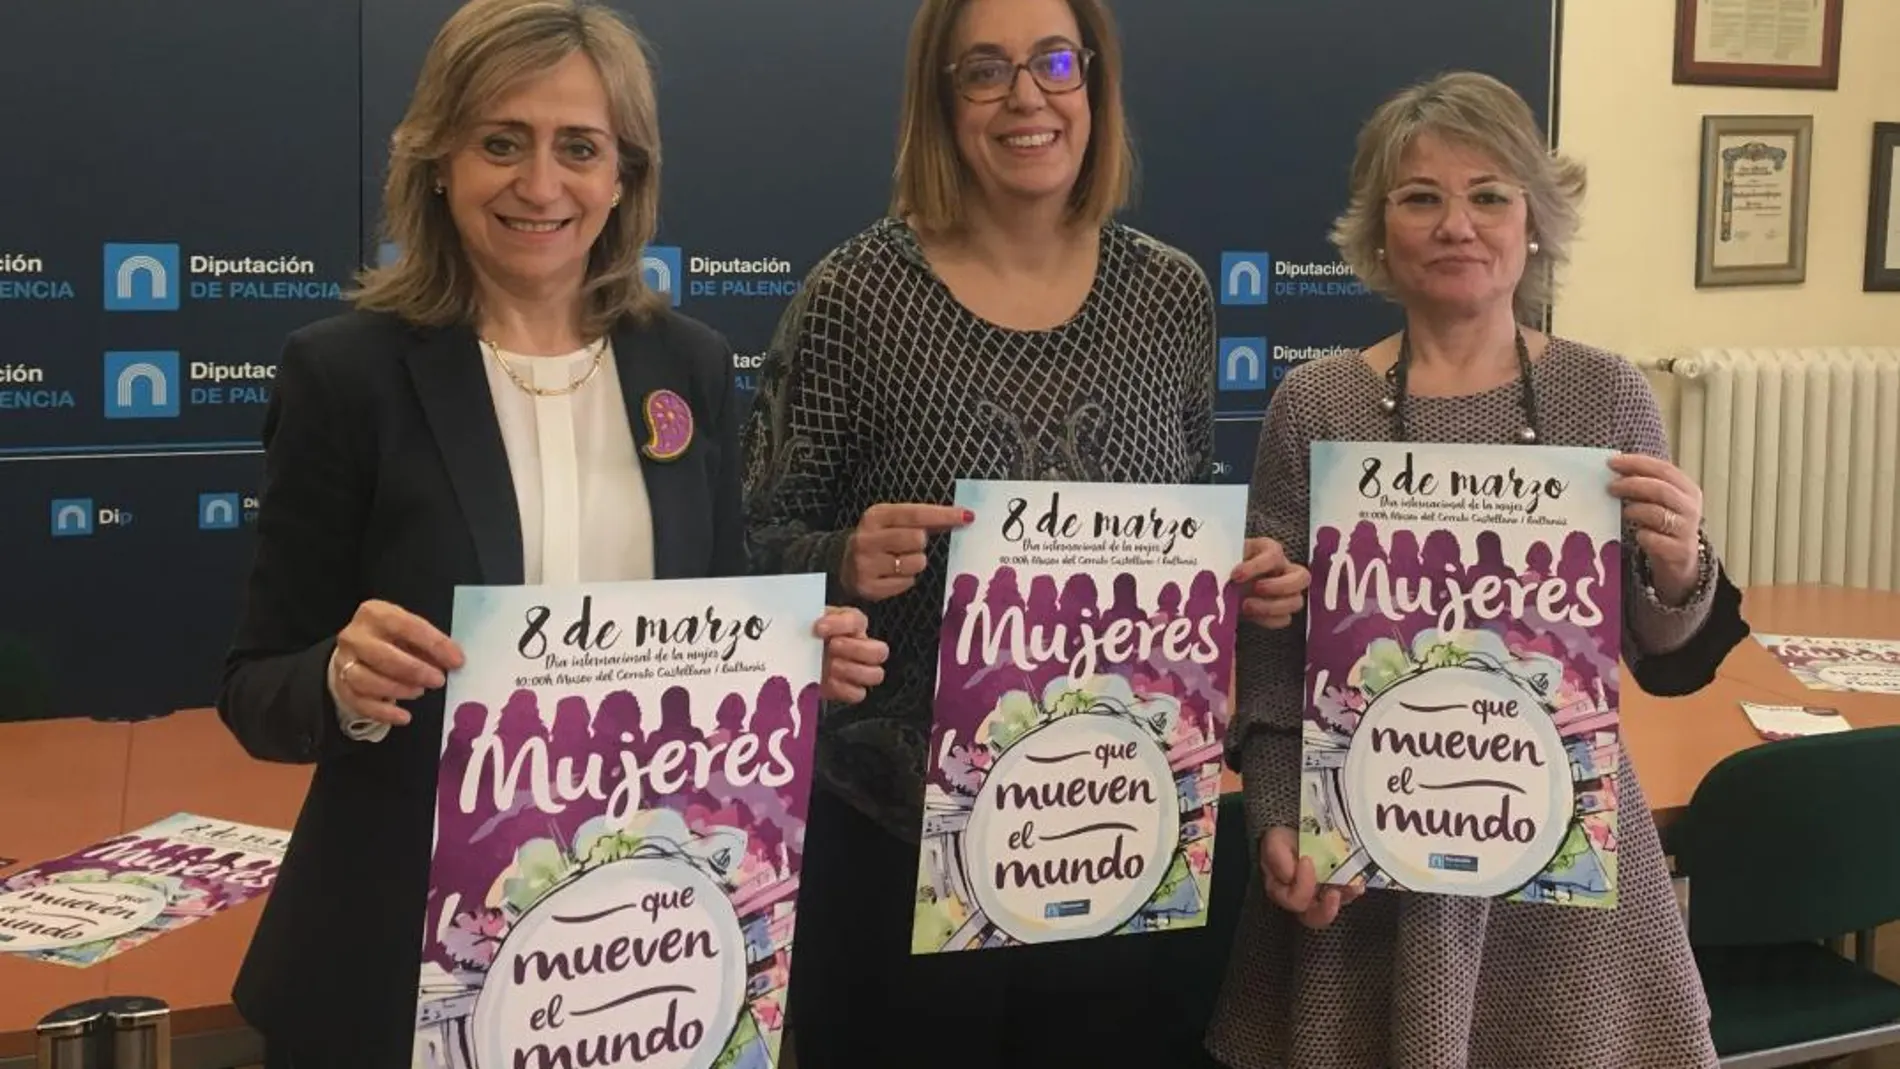 La presidenta de la Diputación de Palencia, Ángeles Armisén, María José Ortega y María José de la Fuente presentan el programa de actividades del Día de la Mujer